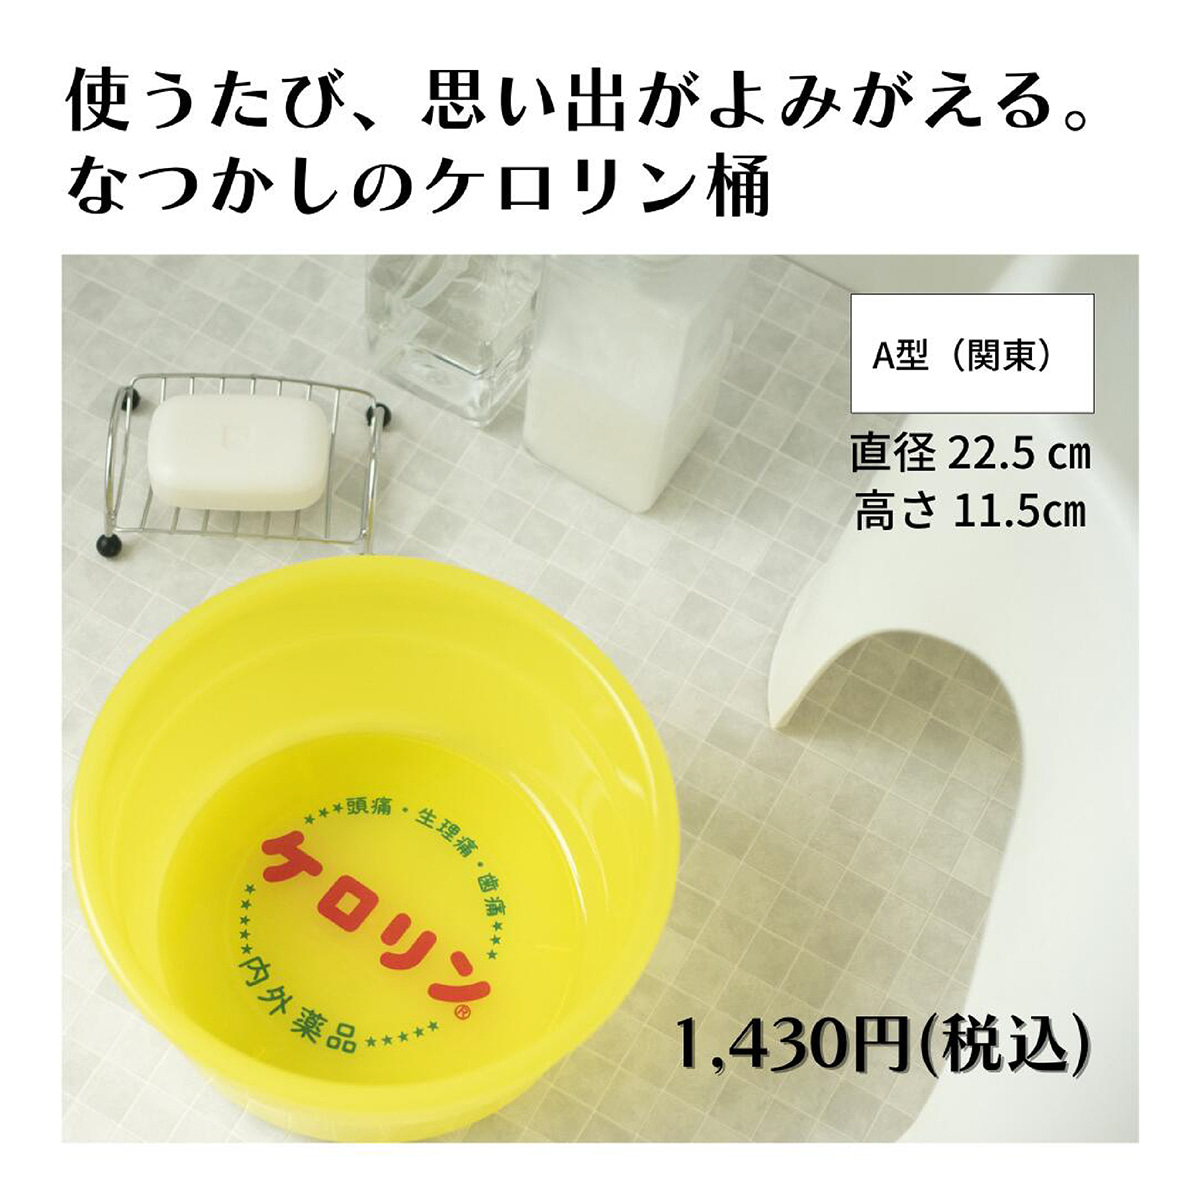 新作商品 ケロリン桶 ケロロ軍曹 00352 洗面器・湯おけ